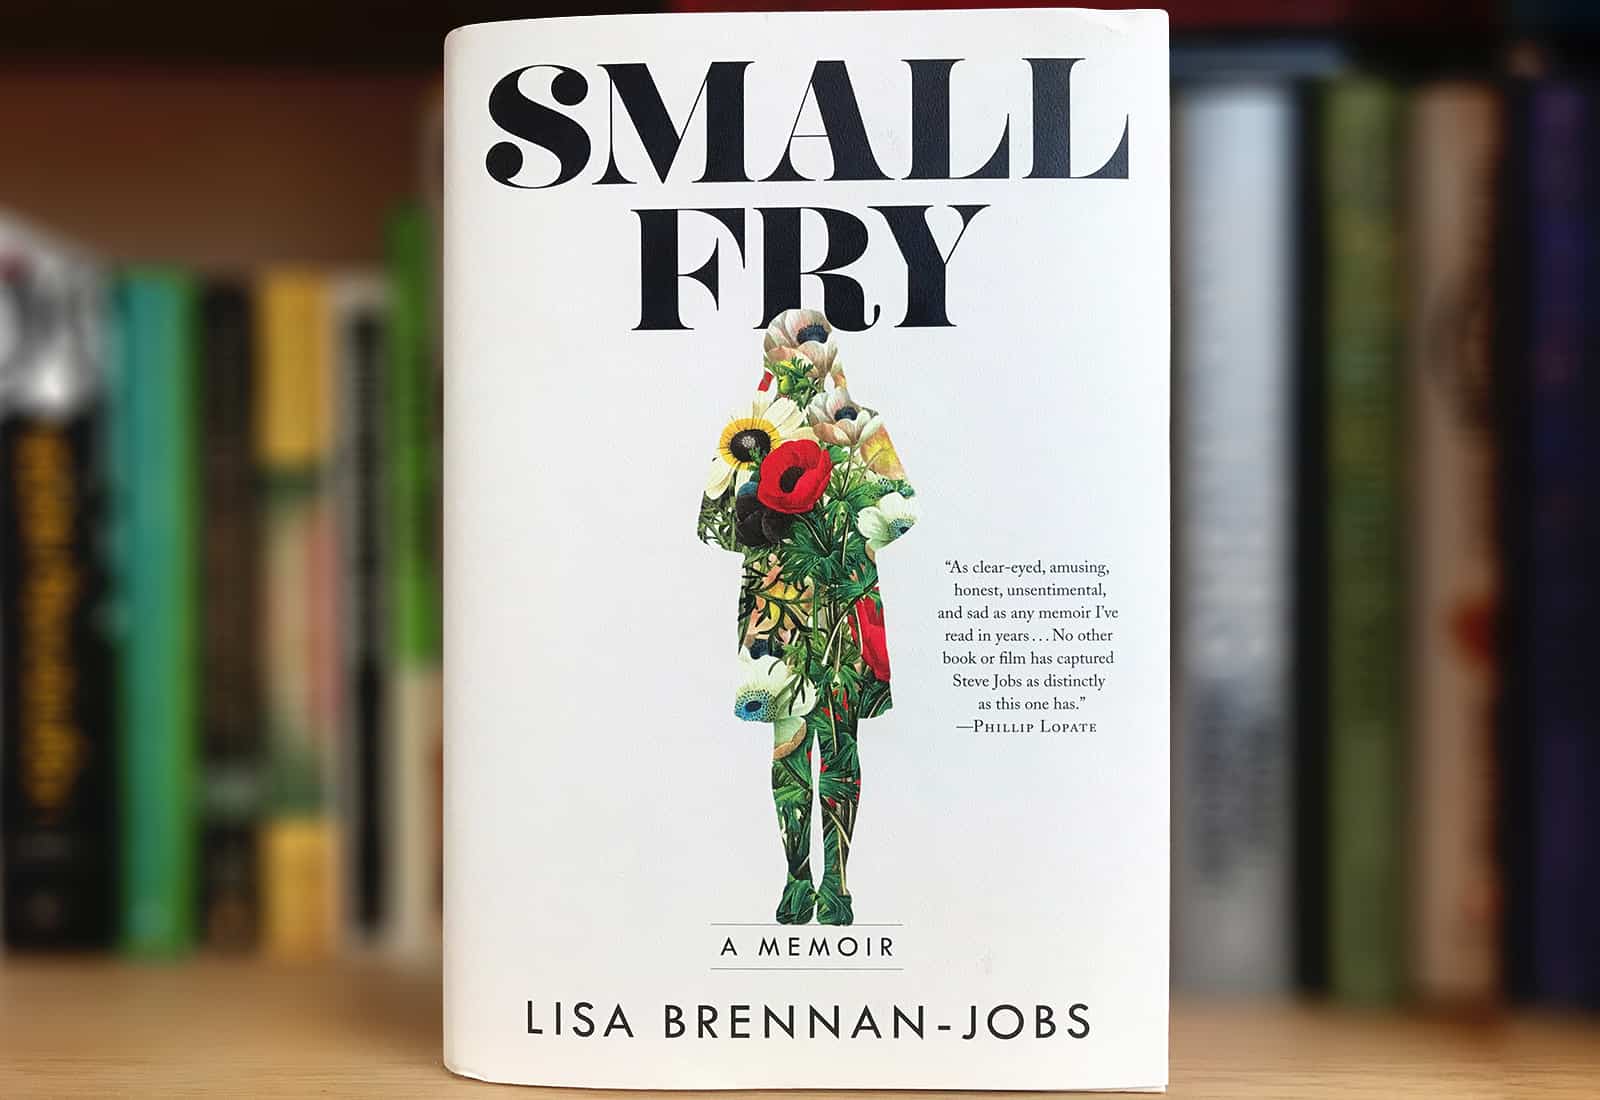 Think Steve Jobs was tough as a boss? Lisa Brennan-Jobs memoir 